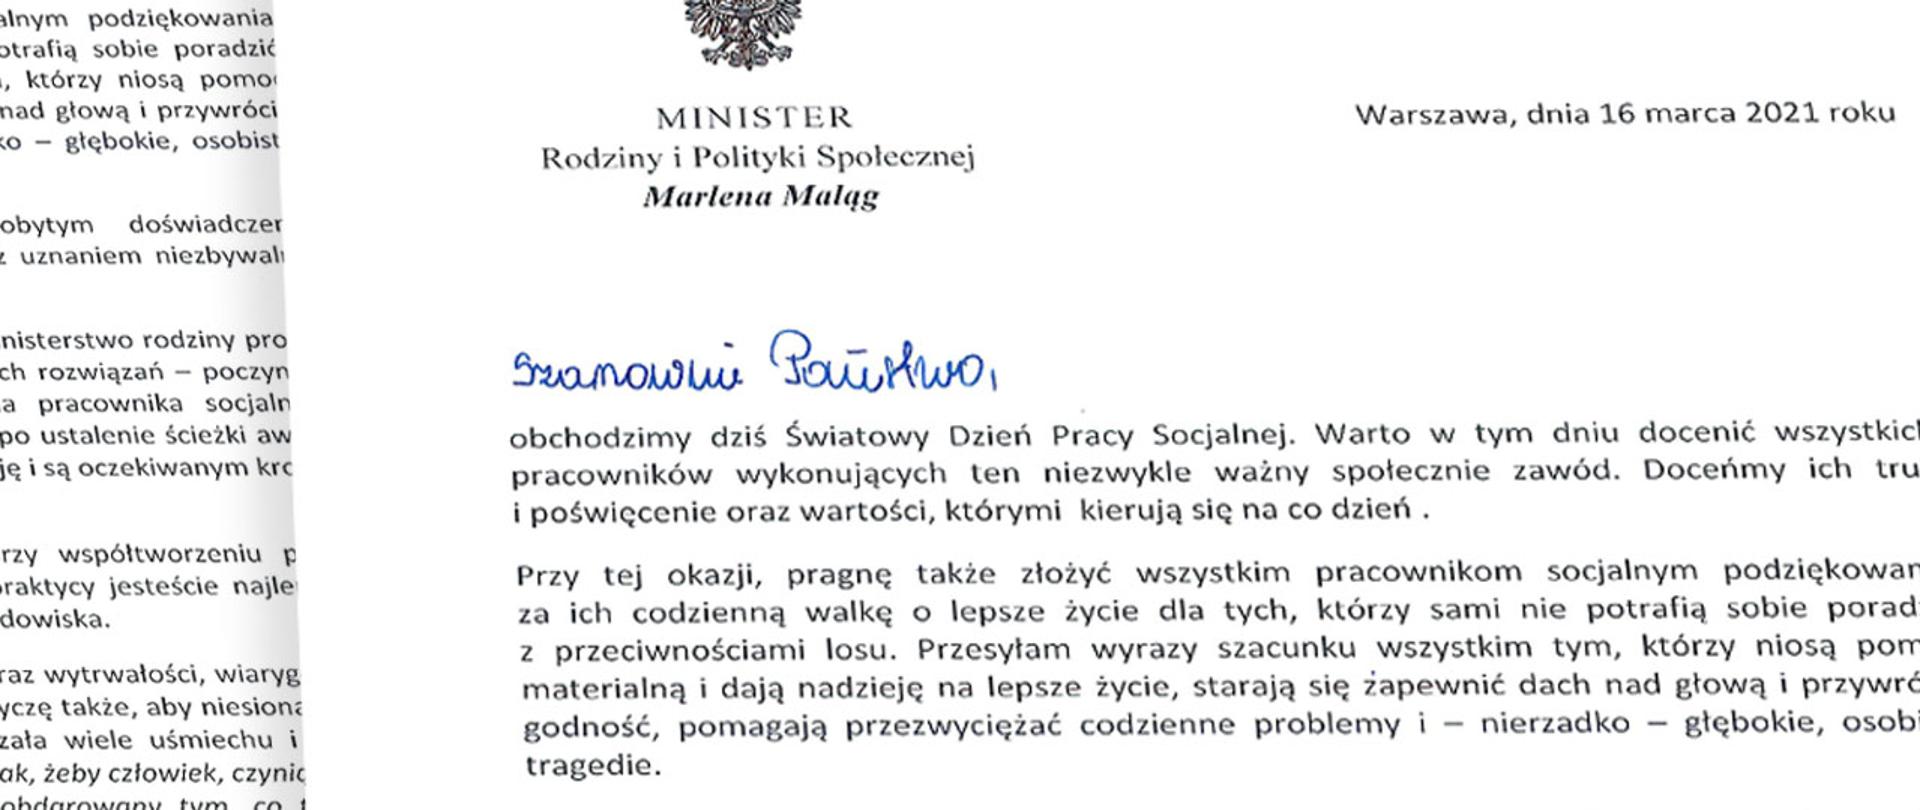 zyczenia Minister Marleny Maląg z okazji Dnia Pracy Socjalnej